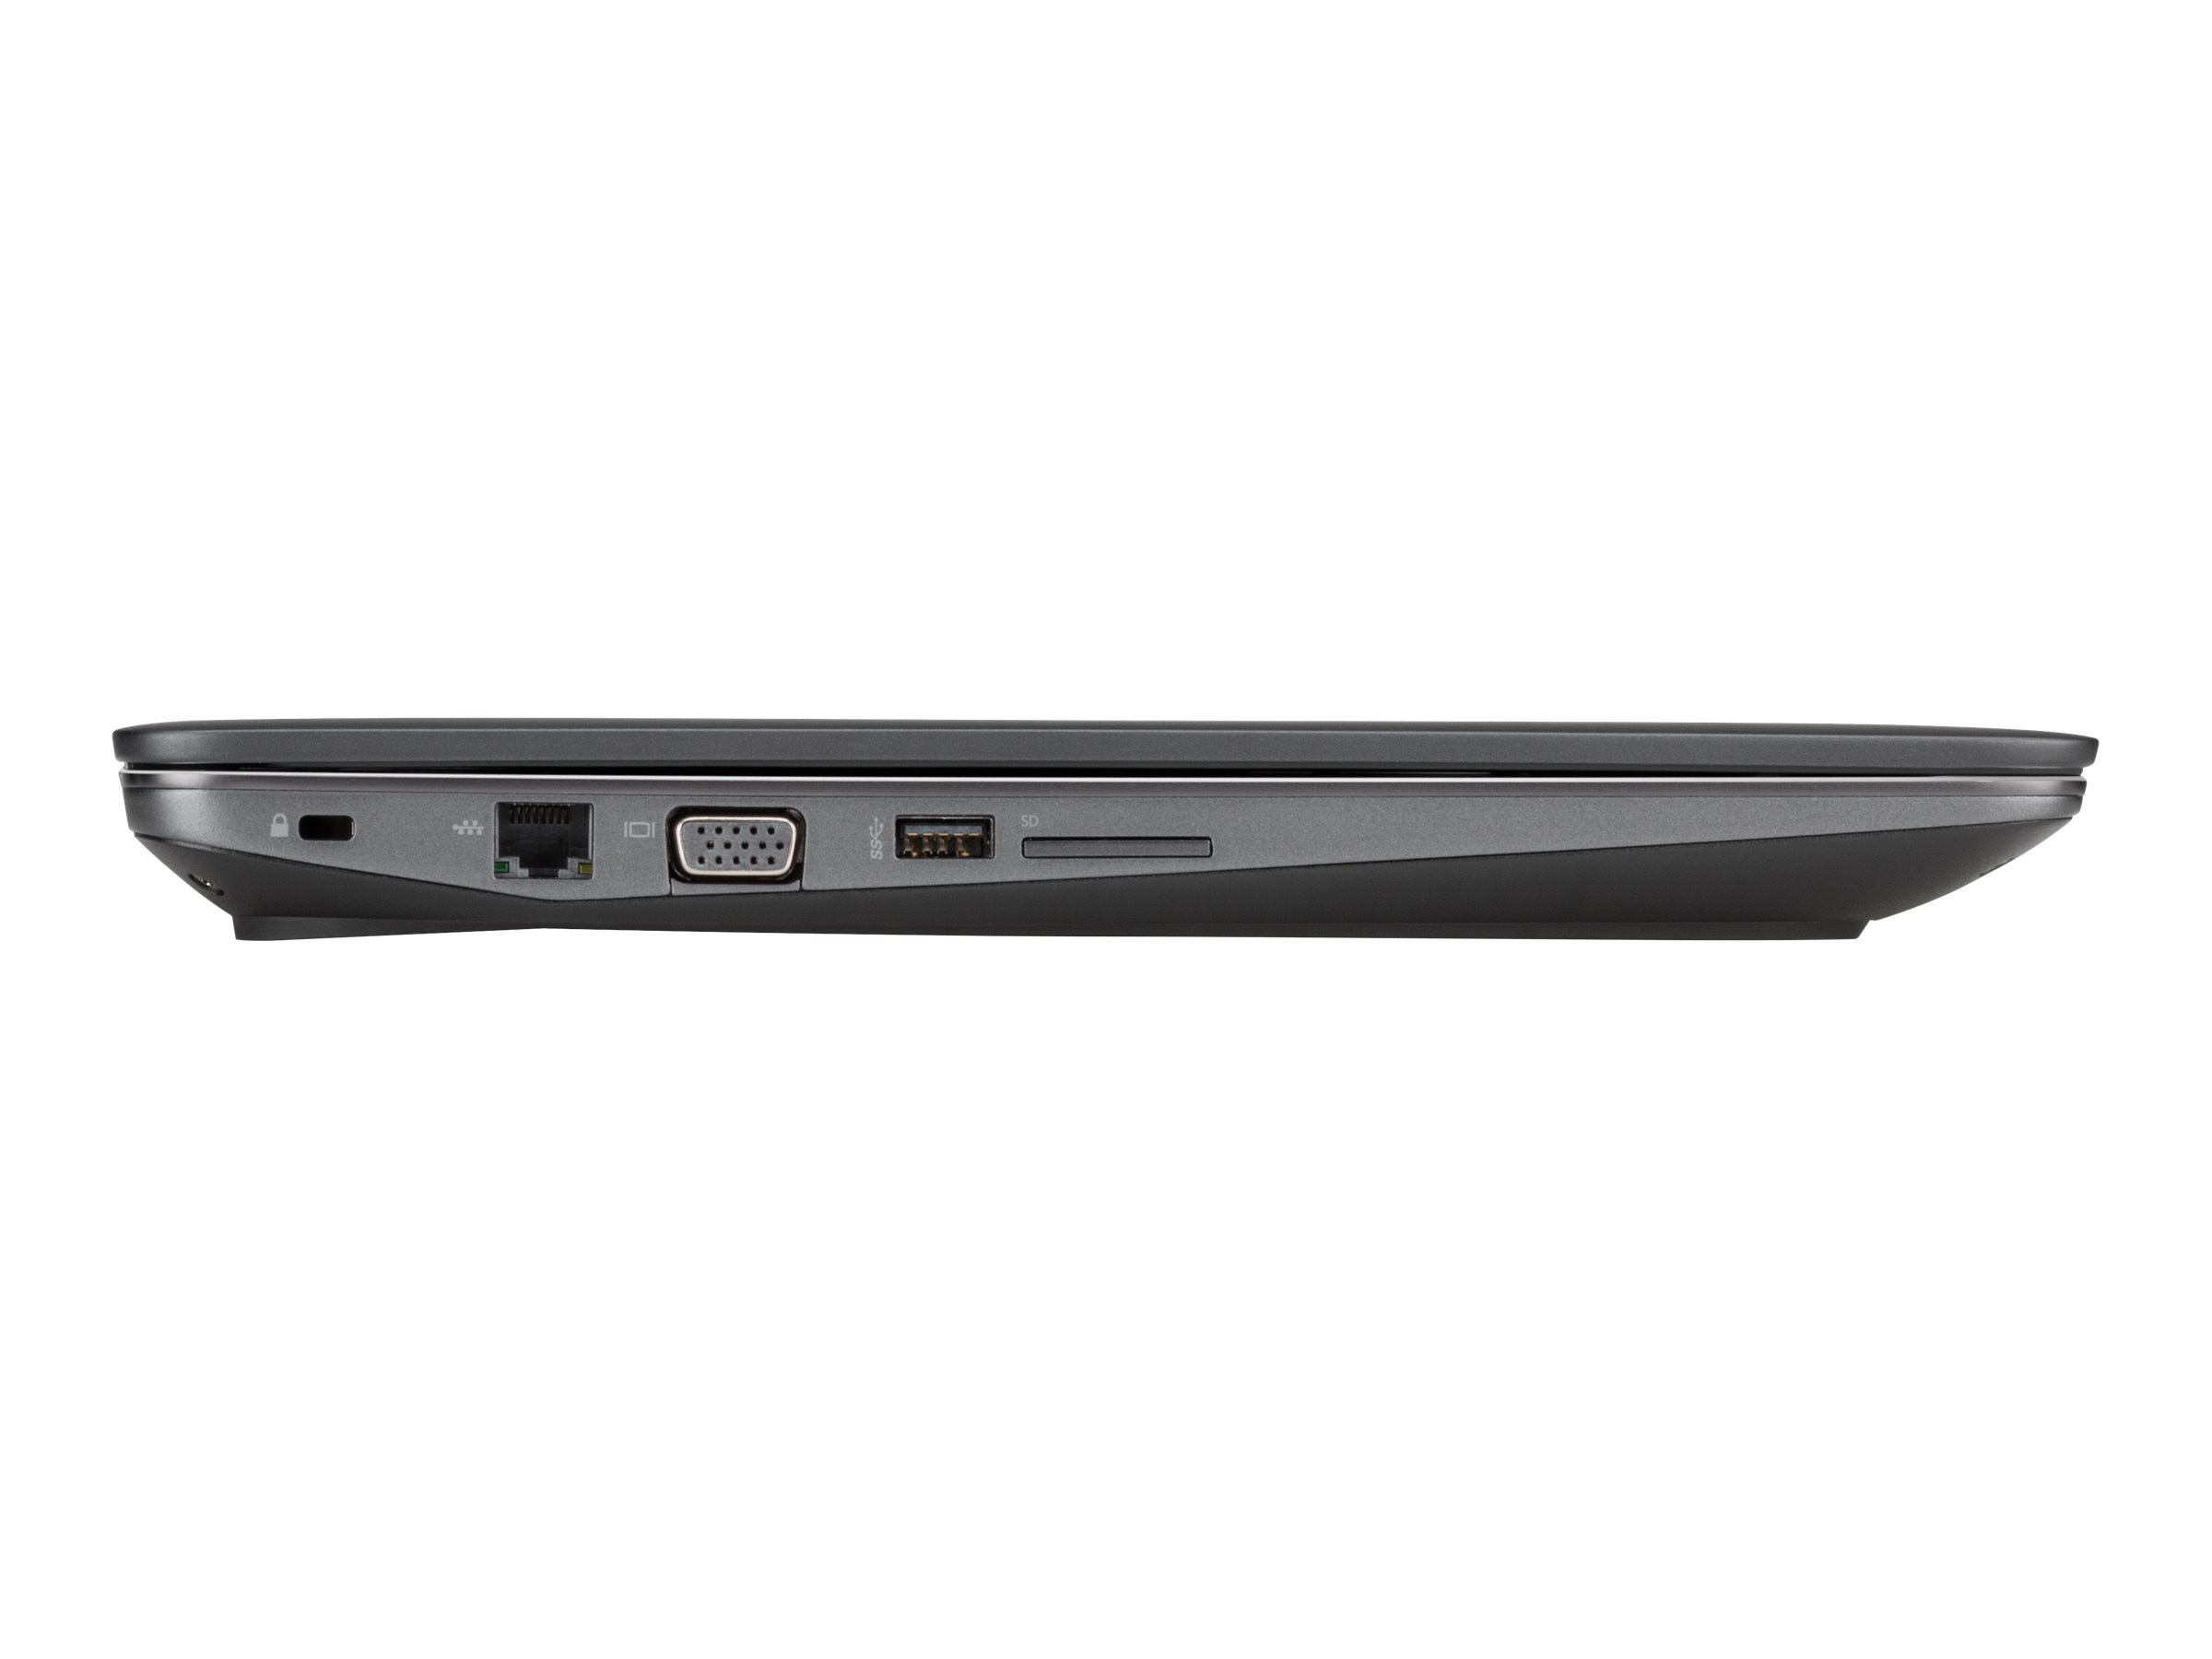 HP ZBook 15 G3 | 15.6" | E3-1505M | 32GB | 512GB SSD + 1TB HDD | M2000M | Win 10 Pro | DE